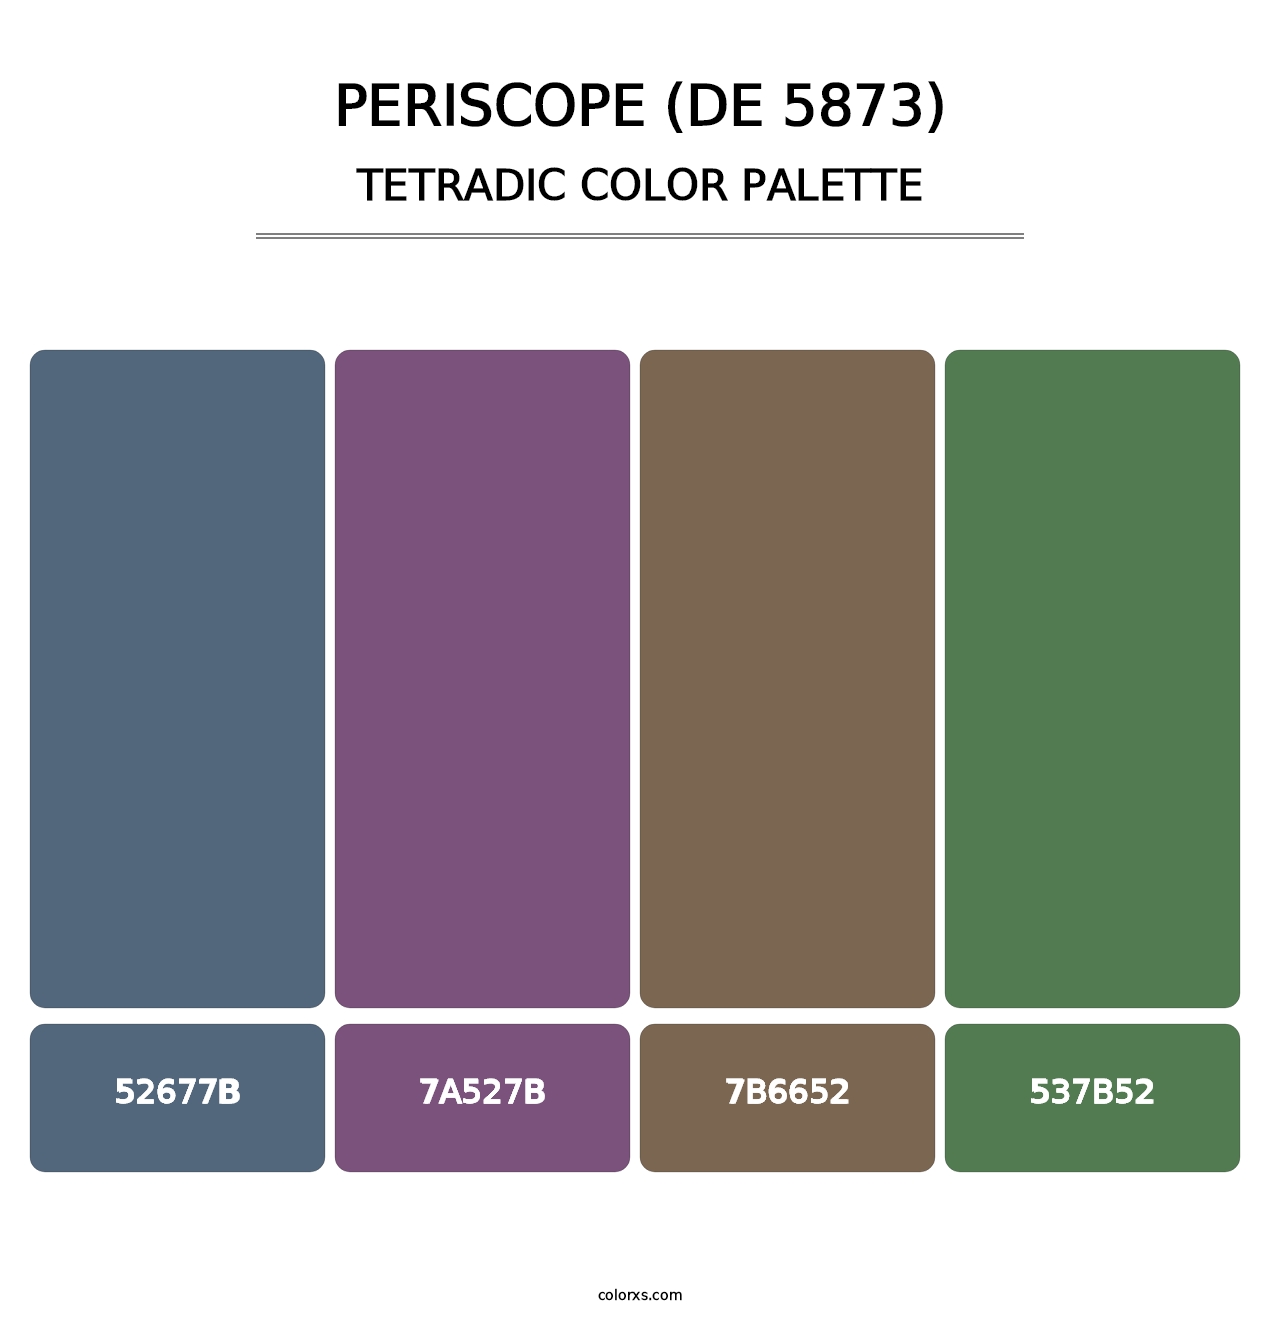 Periscope (DE 5873) - Tetradic Color Palette